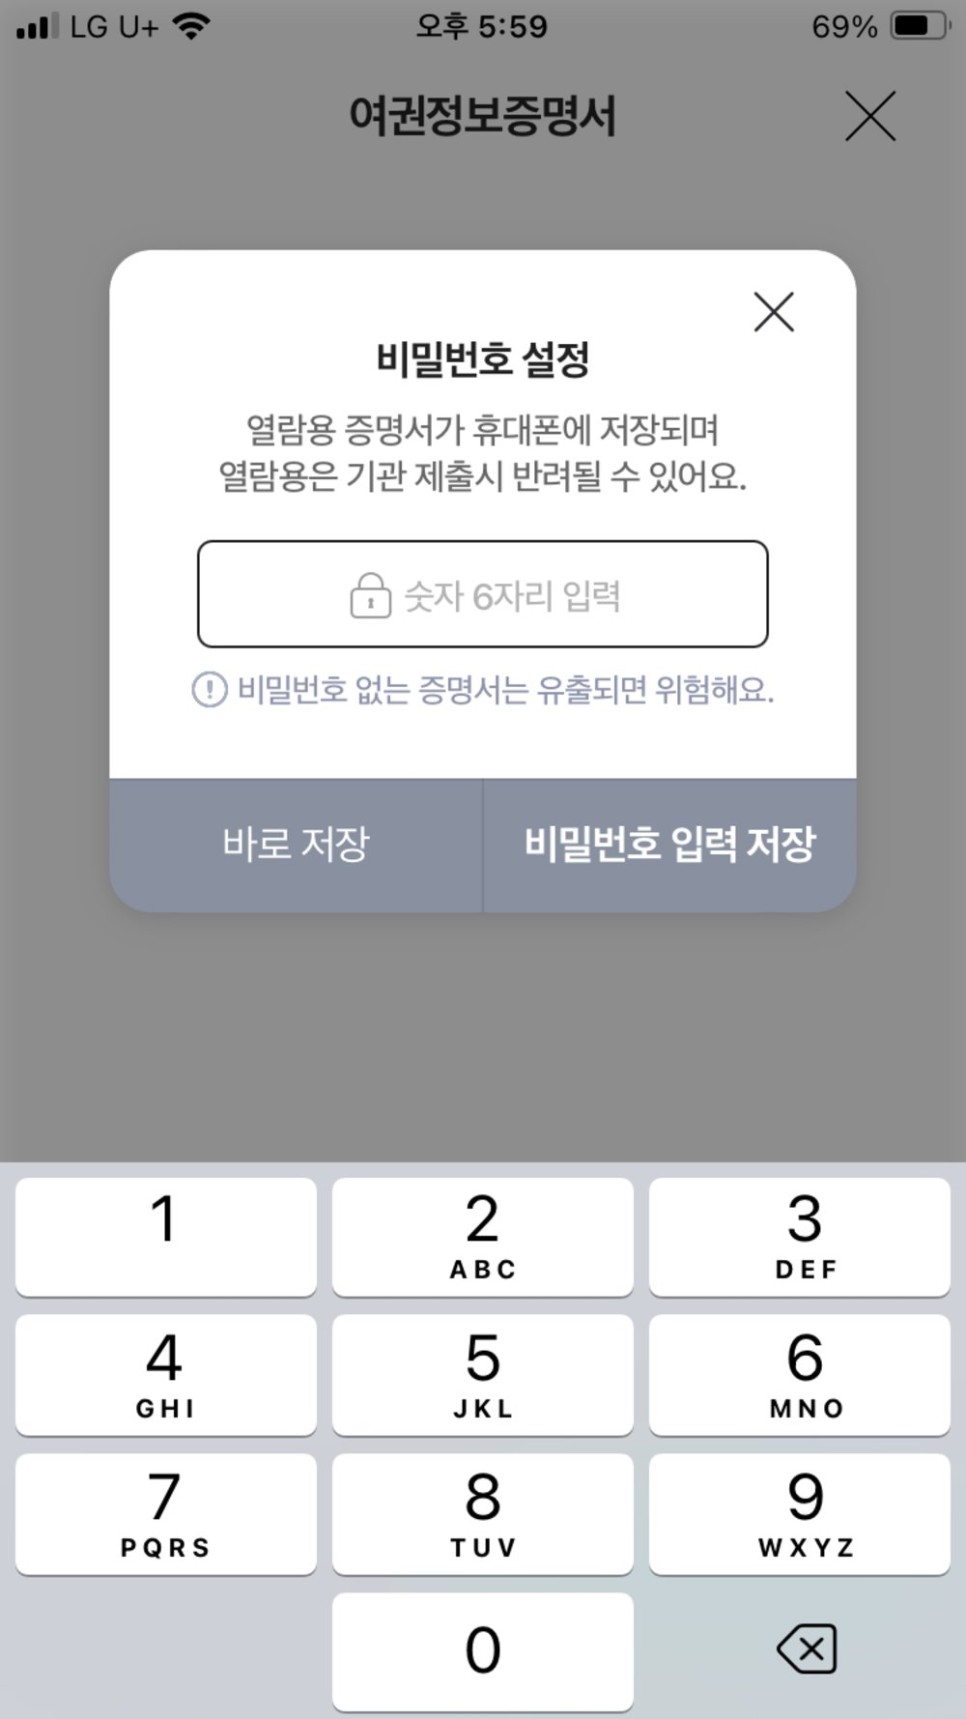 네이버 앱에서 여권정보증명서 발급받는 방법